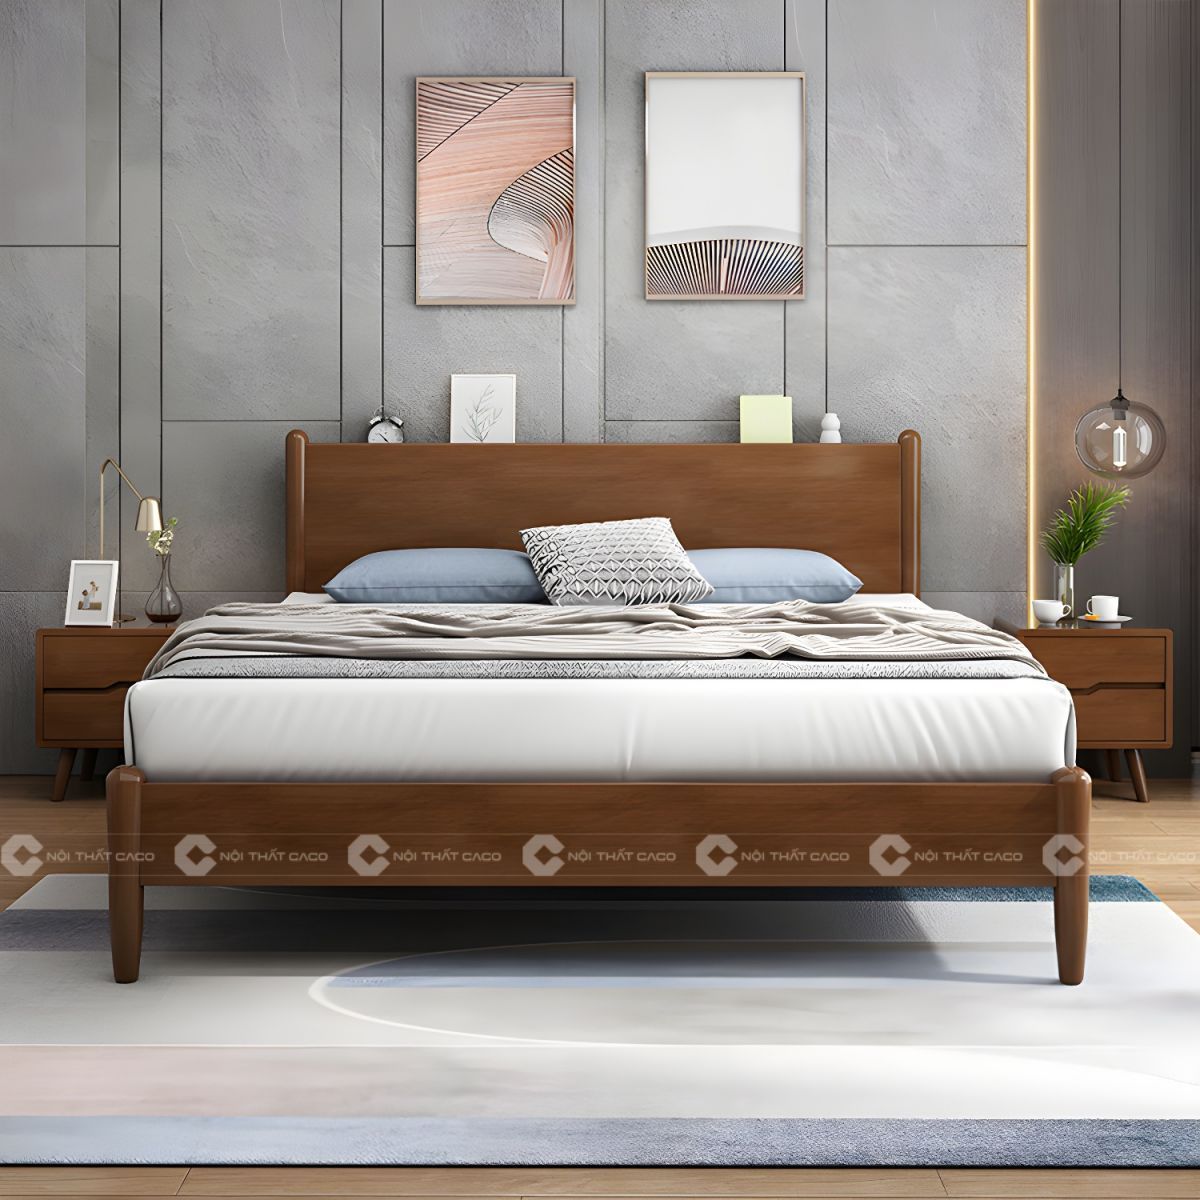 Giường ngủ gỗ tự nhiên bo tròn thanh lịch 